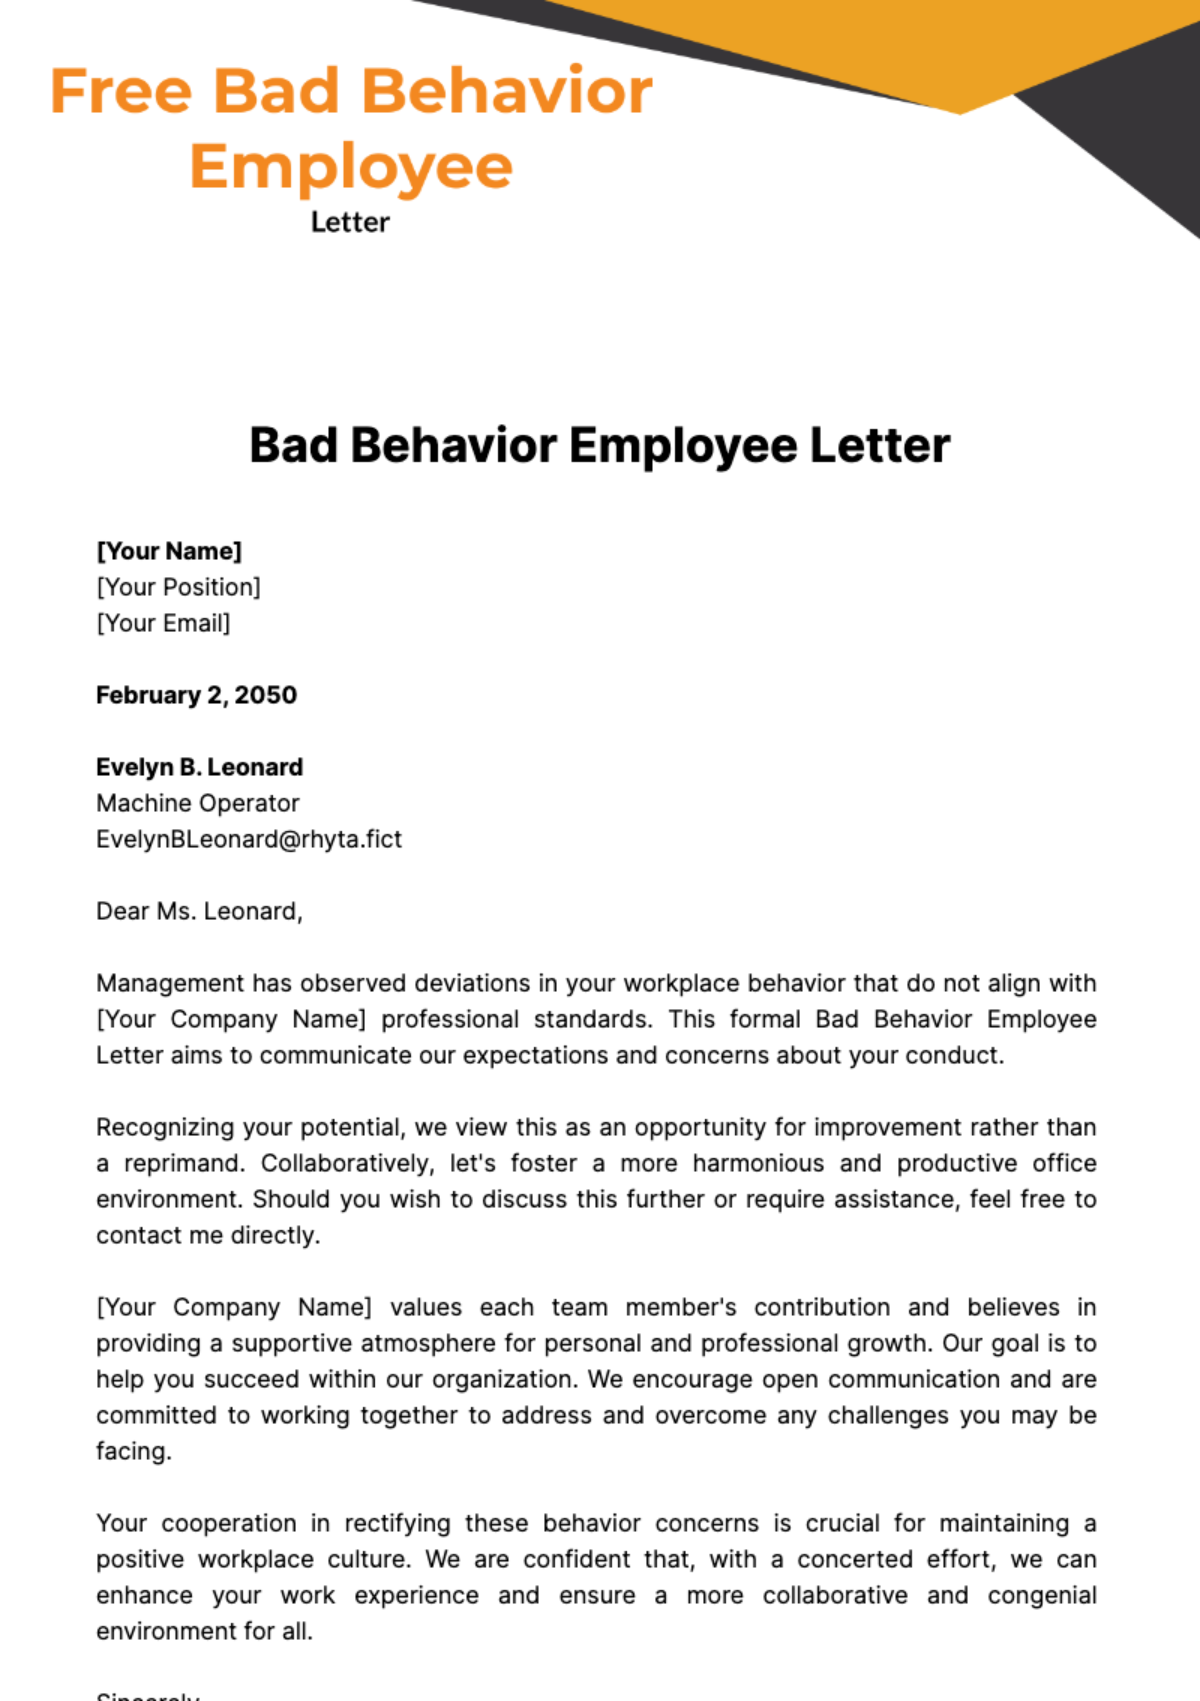 Bad Behavior Employee Letter Template